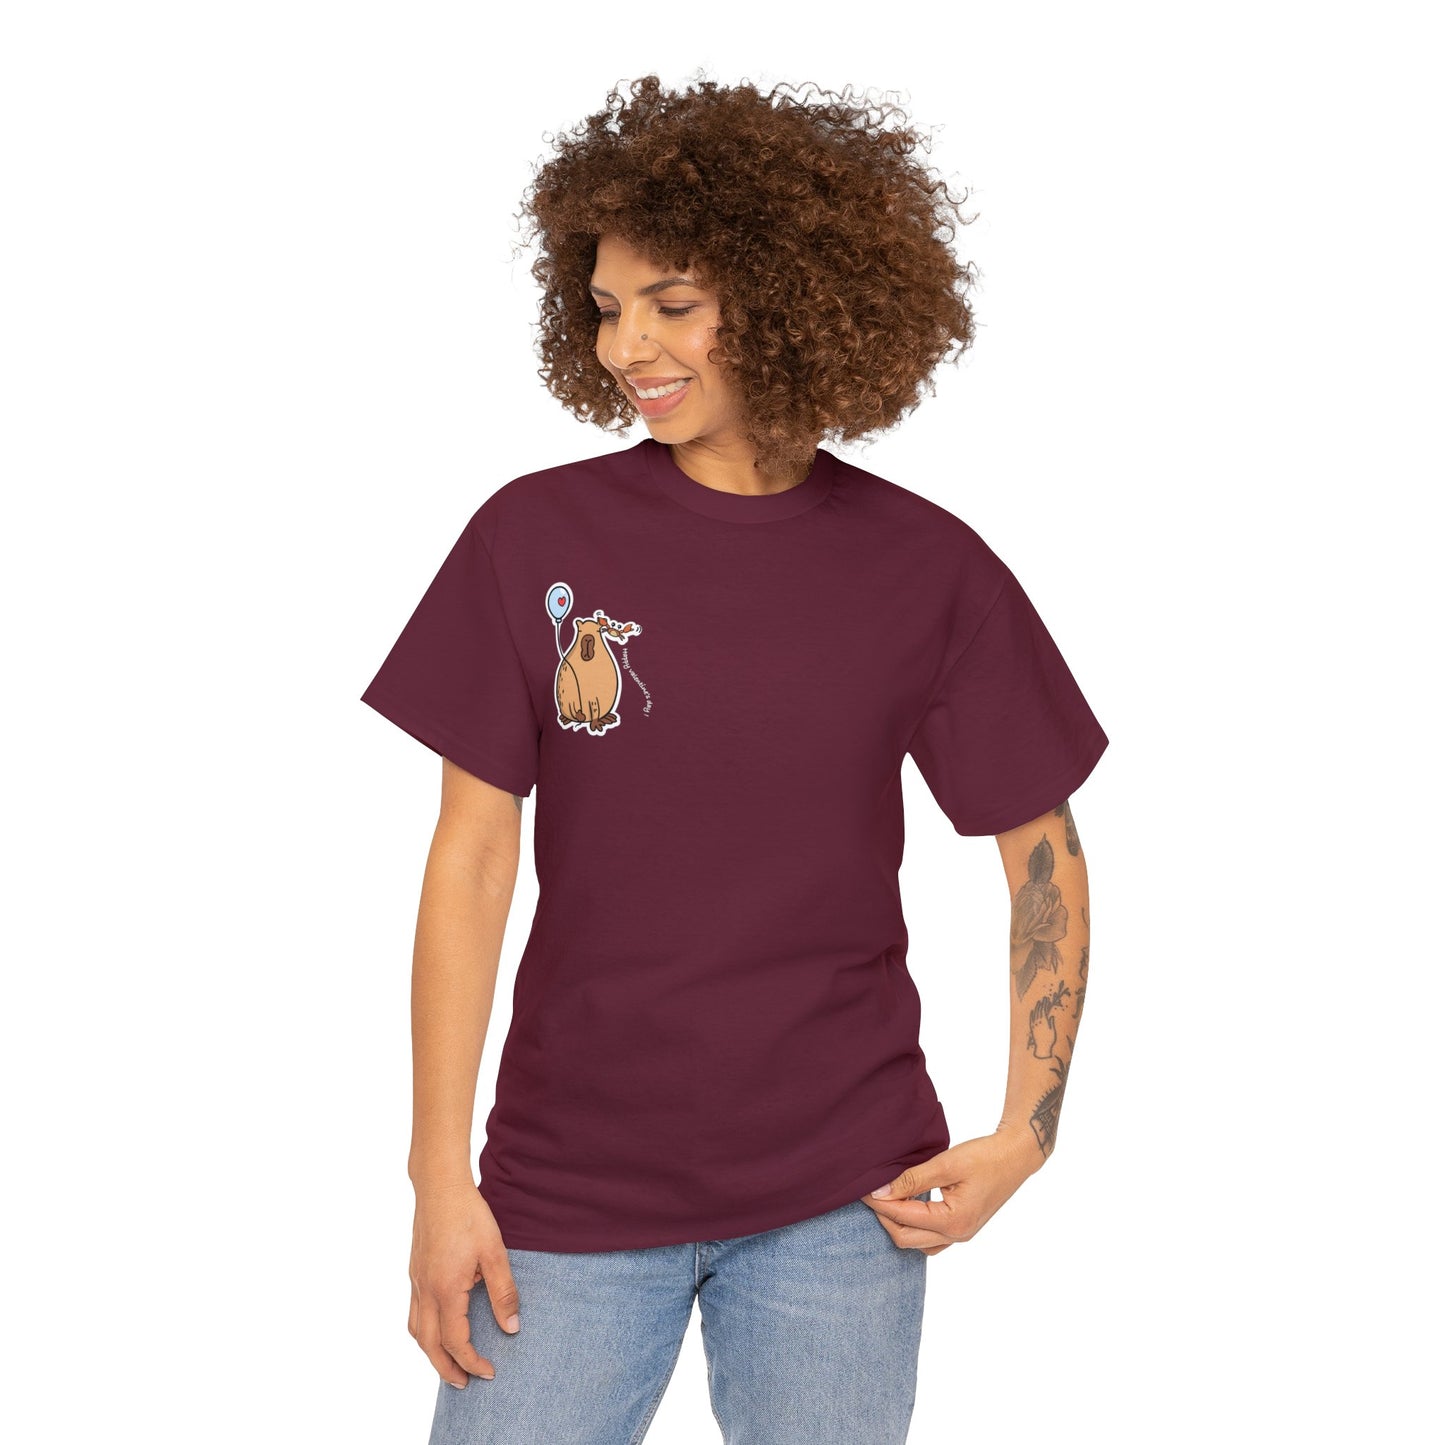 Aquarius T-shirt Women